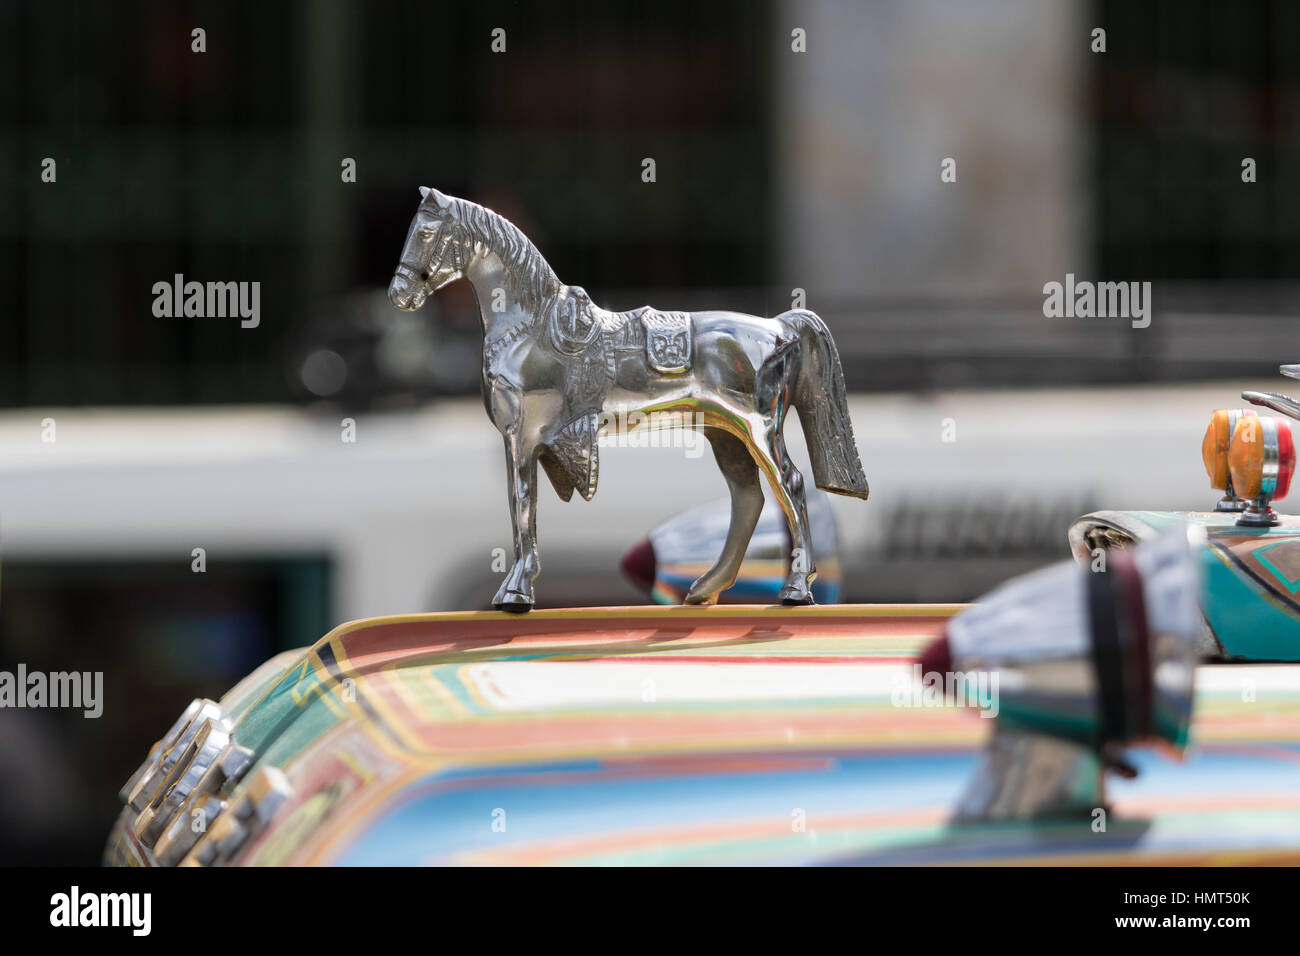 Septiembre 6, 2016 Silvia, Colombia: símbolo de caballo en la parte superior de un autobús, transporte público Foto de stock